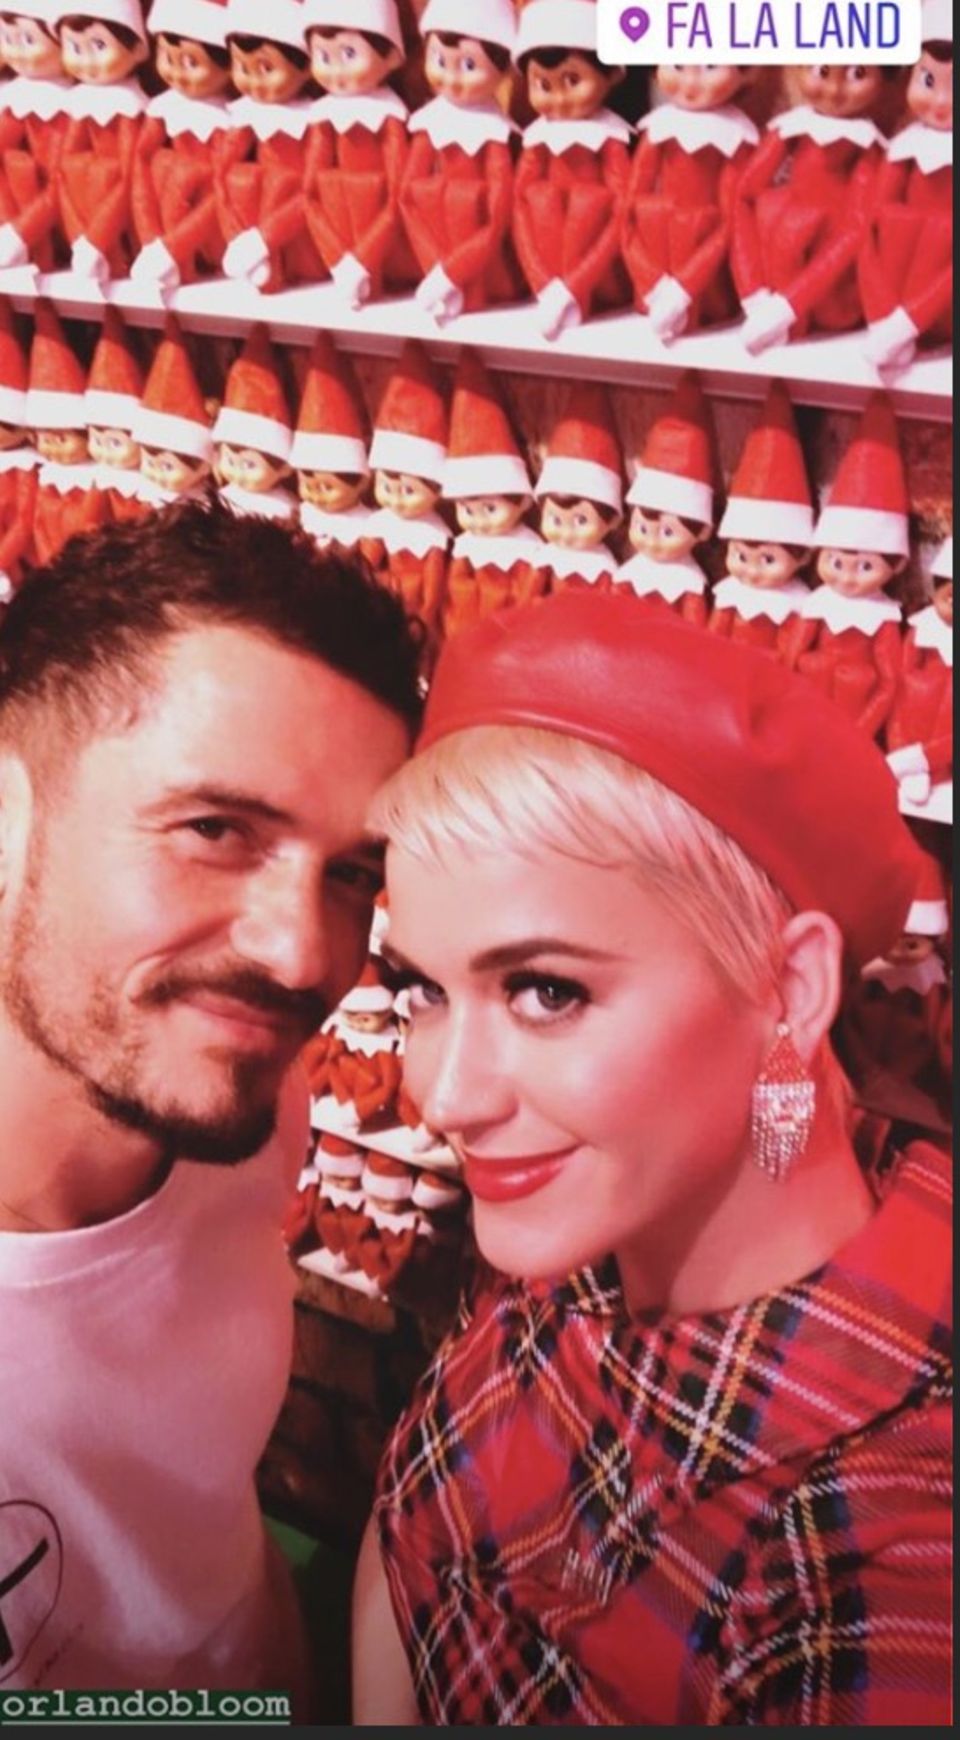 17. Dezember 2018   Schauspieler Orlando Bloom und Sängerin Katy Perry sind ein absolutes Traumpärchen: Fans dürften sich über das gemeinsame Weihnachtsfoto der Superstars riesig freuen.